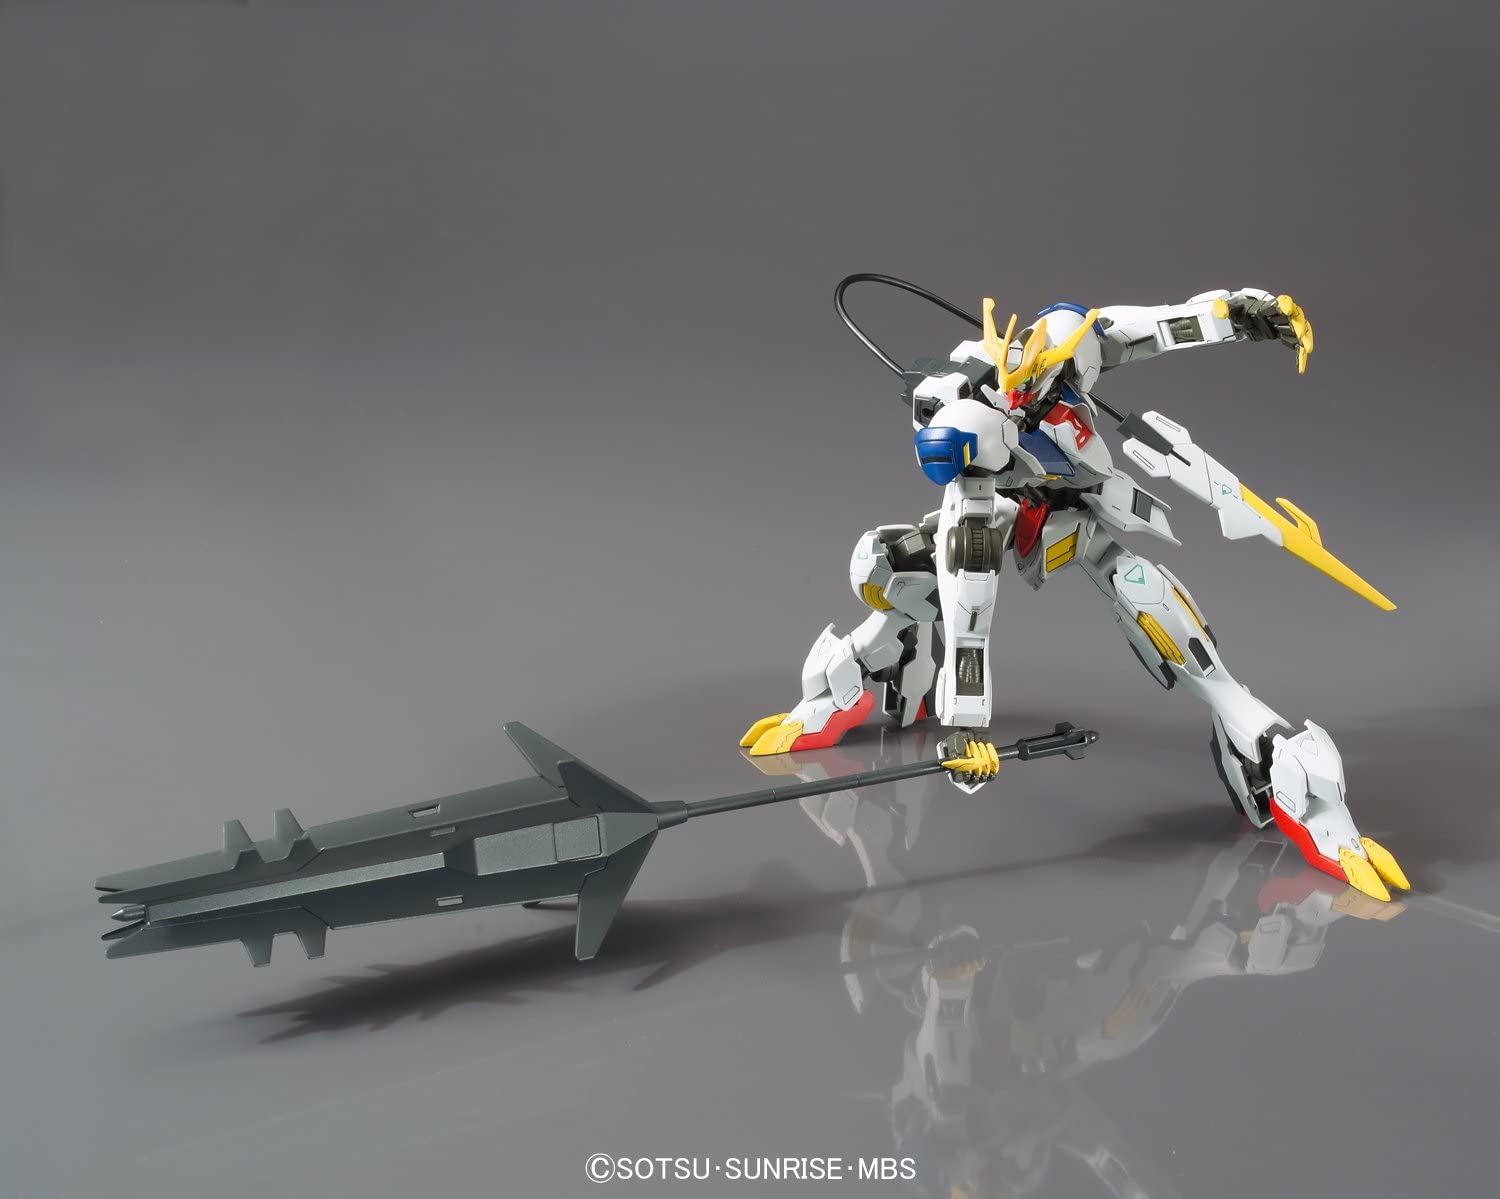 1/144 HG Gundam Barbatos Lupus Rex | animota